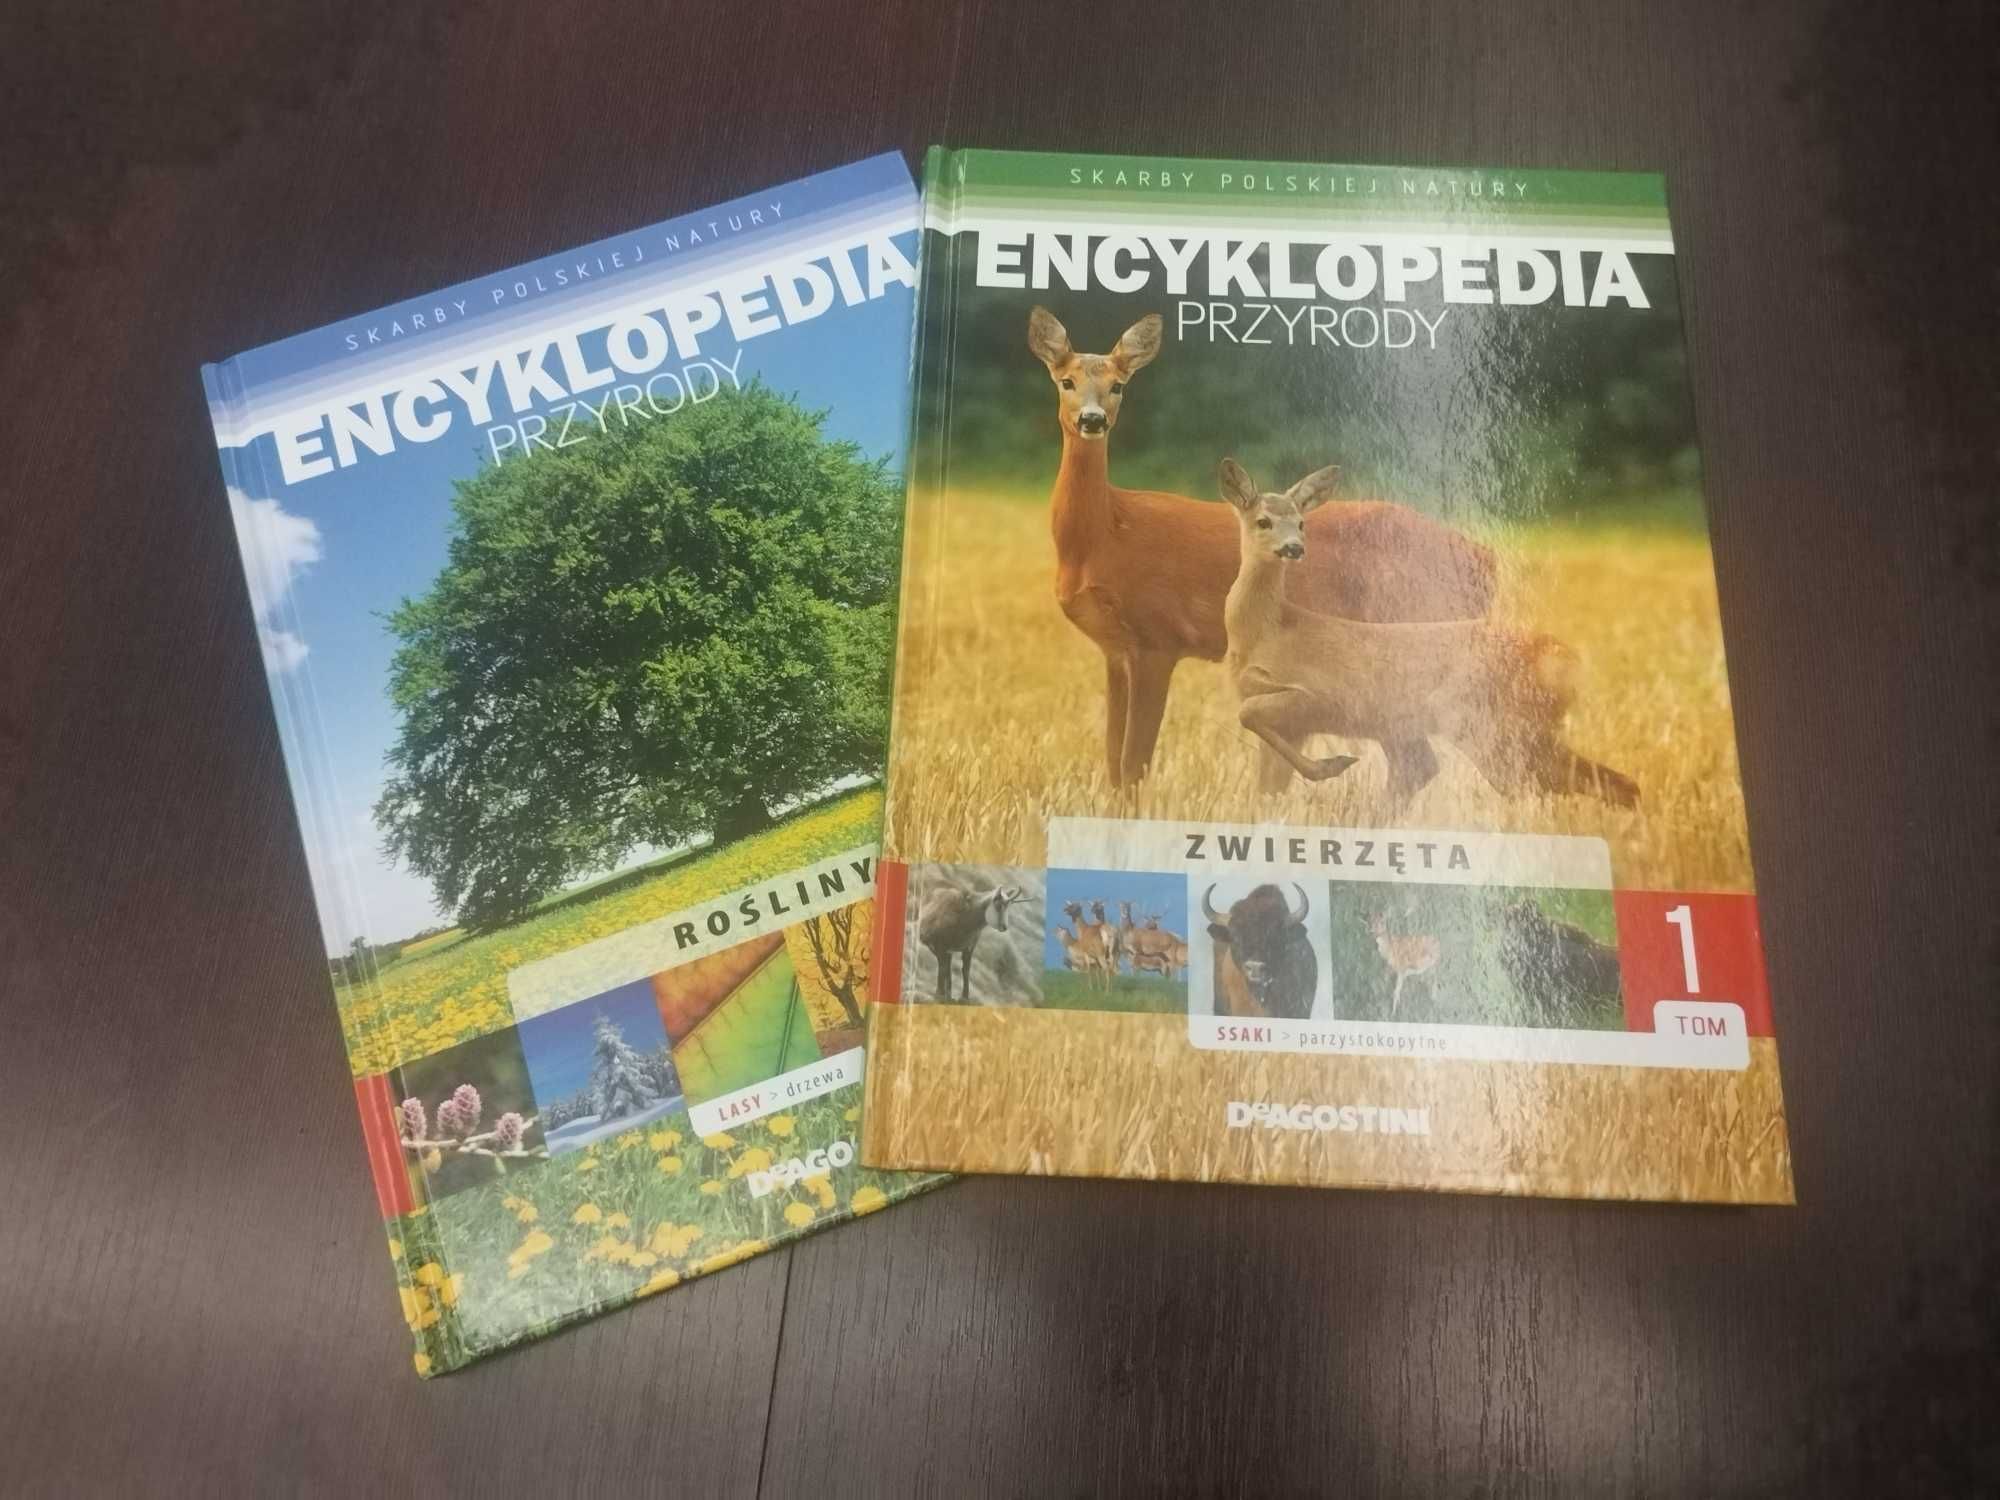 Encyklopedia przytody 33 książki